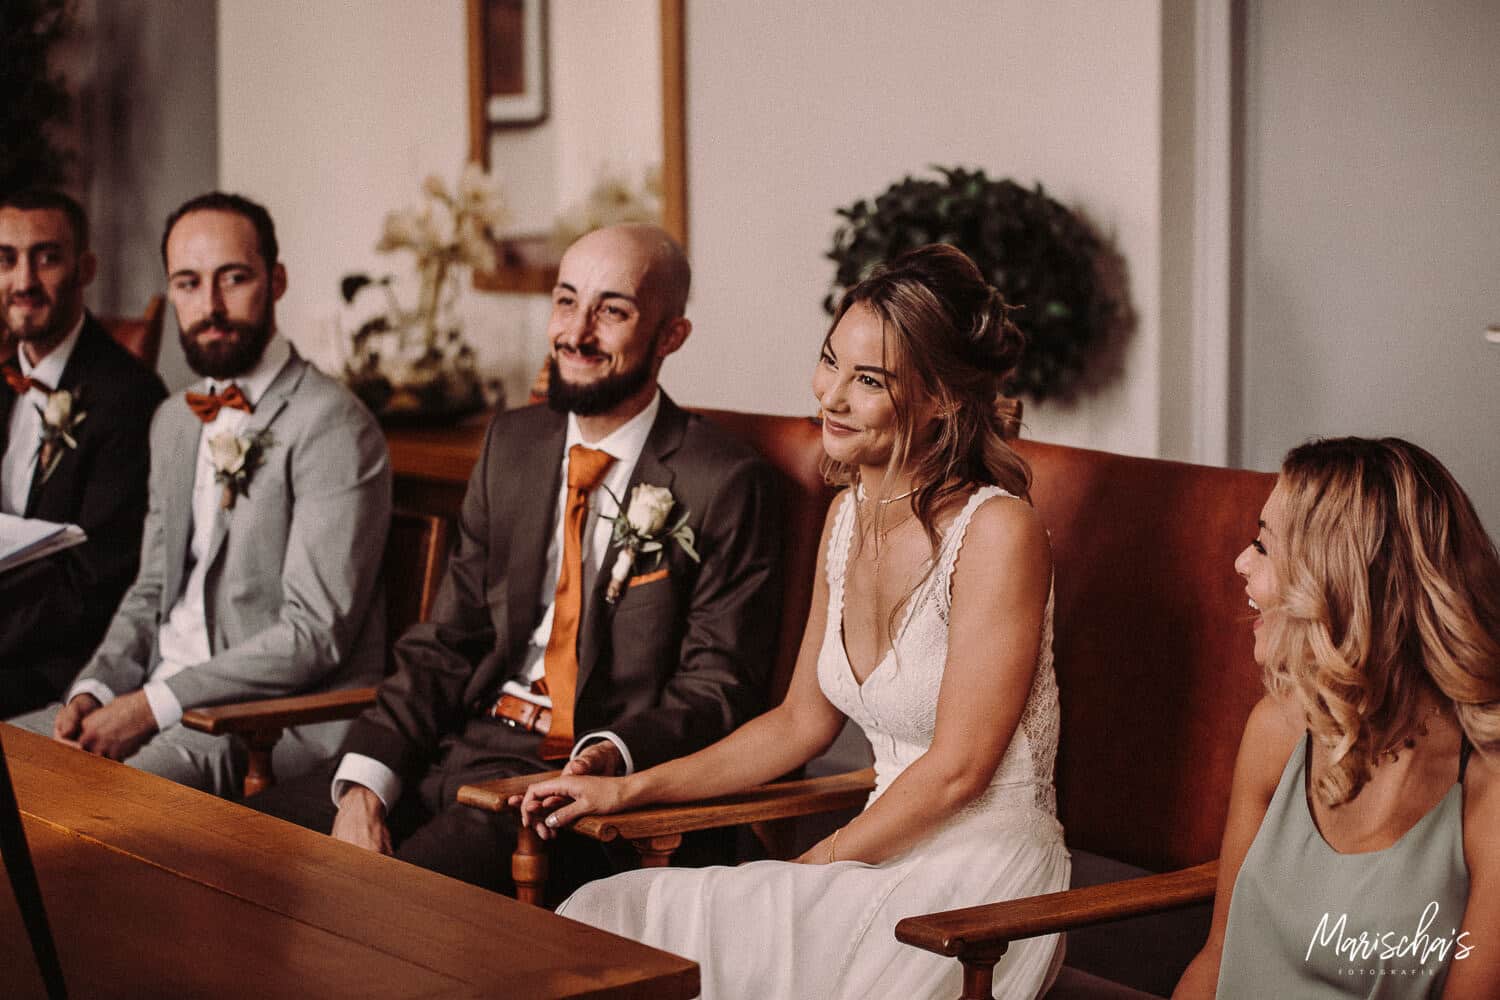 Bruidsfotograaf voor een bruidsreportage van een bruiloft in regio Drenthe